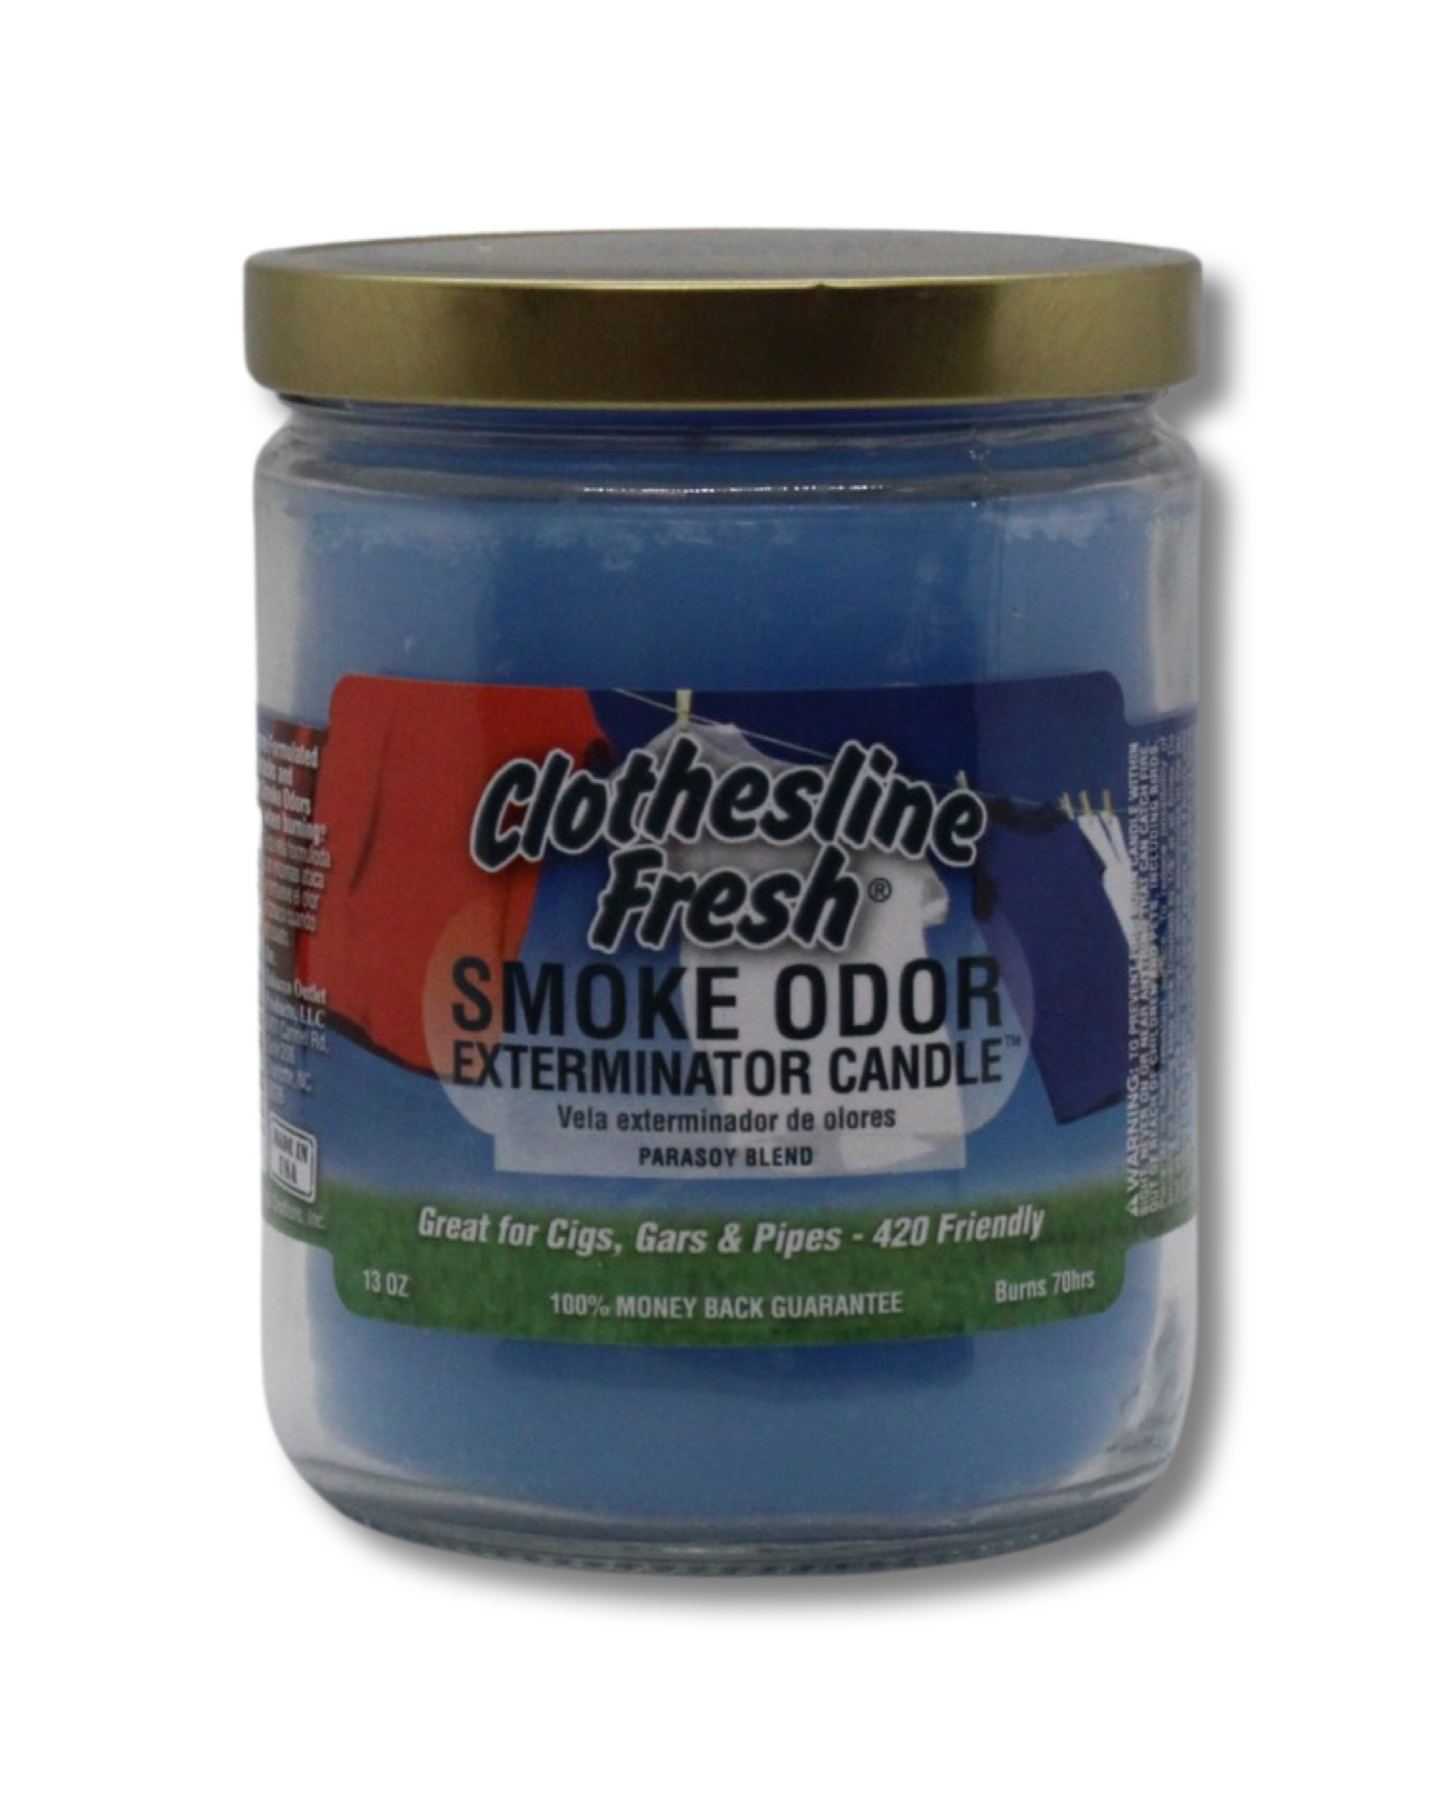 Smoke Odor Exterminator Candle Clothesline Fresh